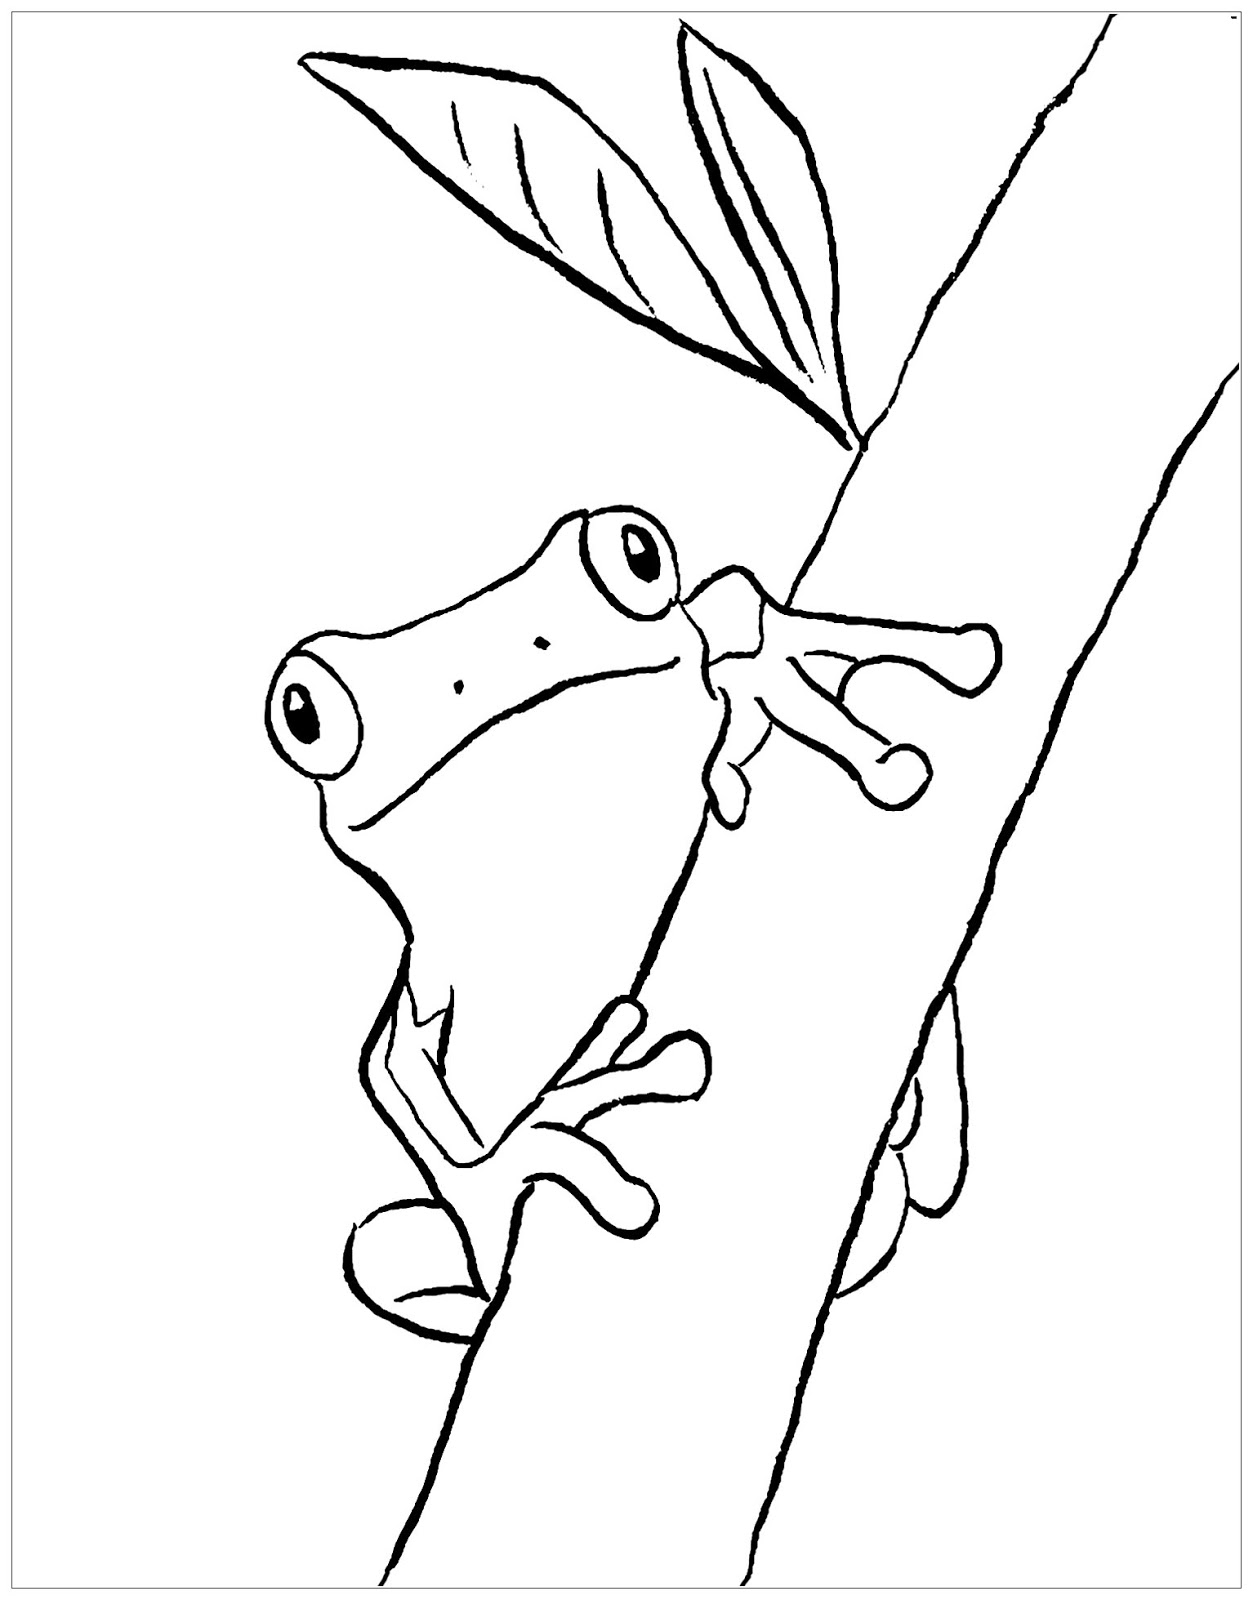 Tranh tô màu chú ếch bám trên thân cây